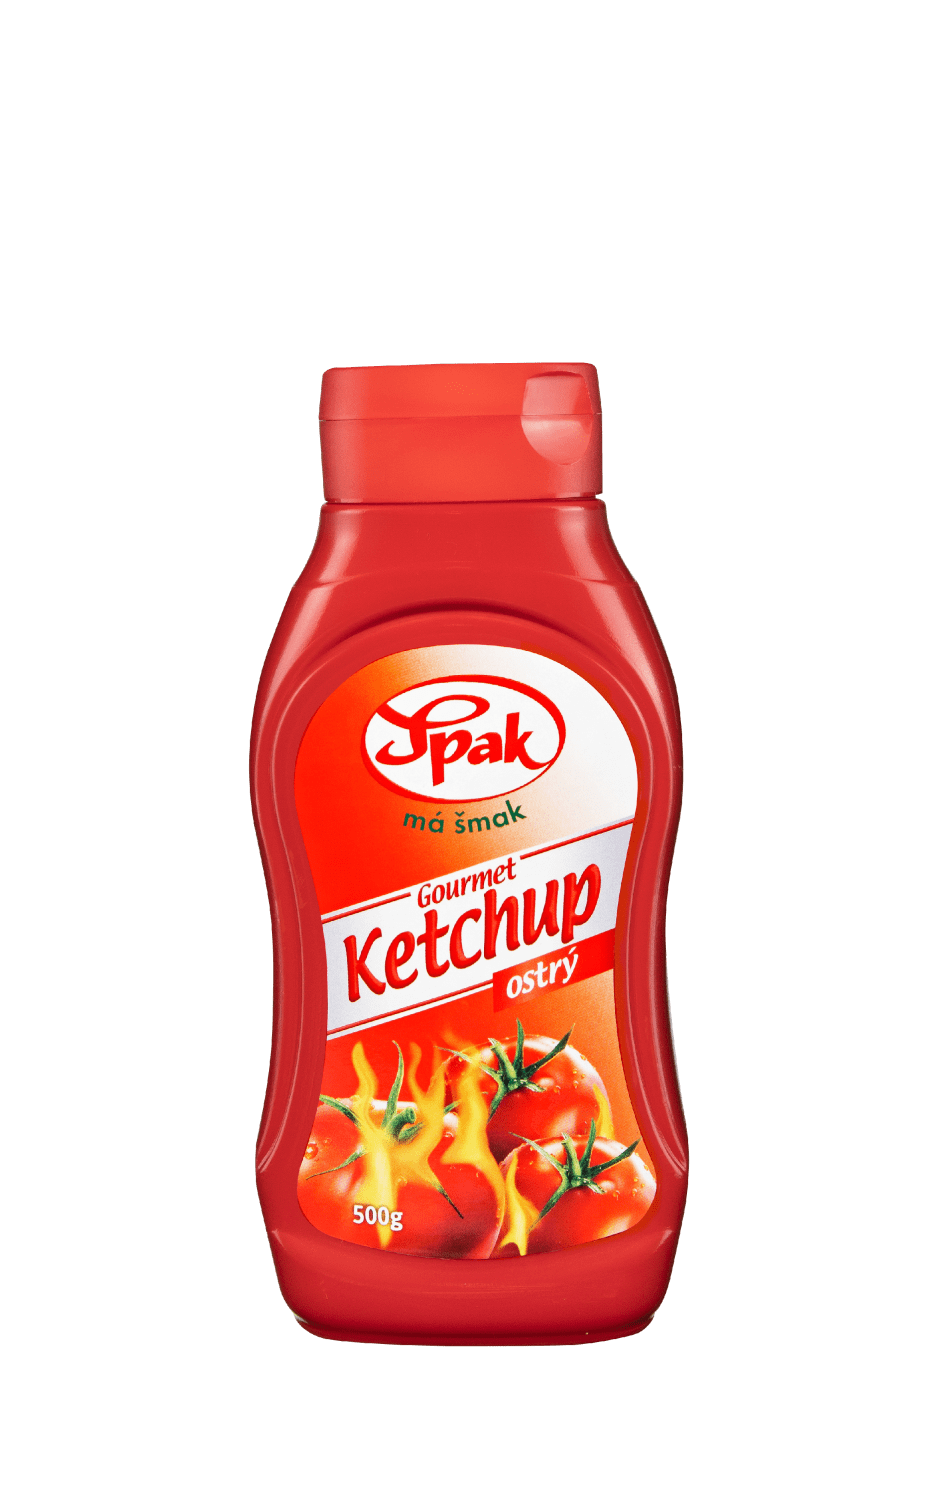 Ketchup-ostry-Gourmet-500-g